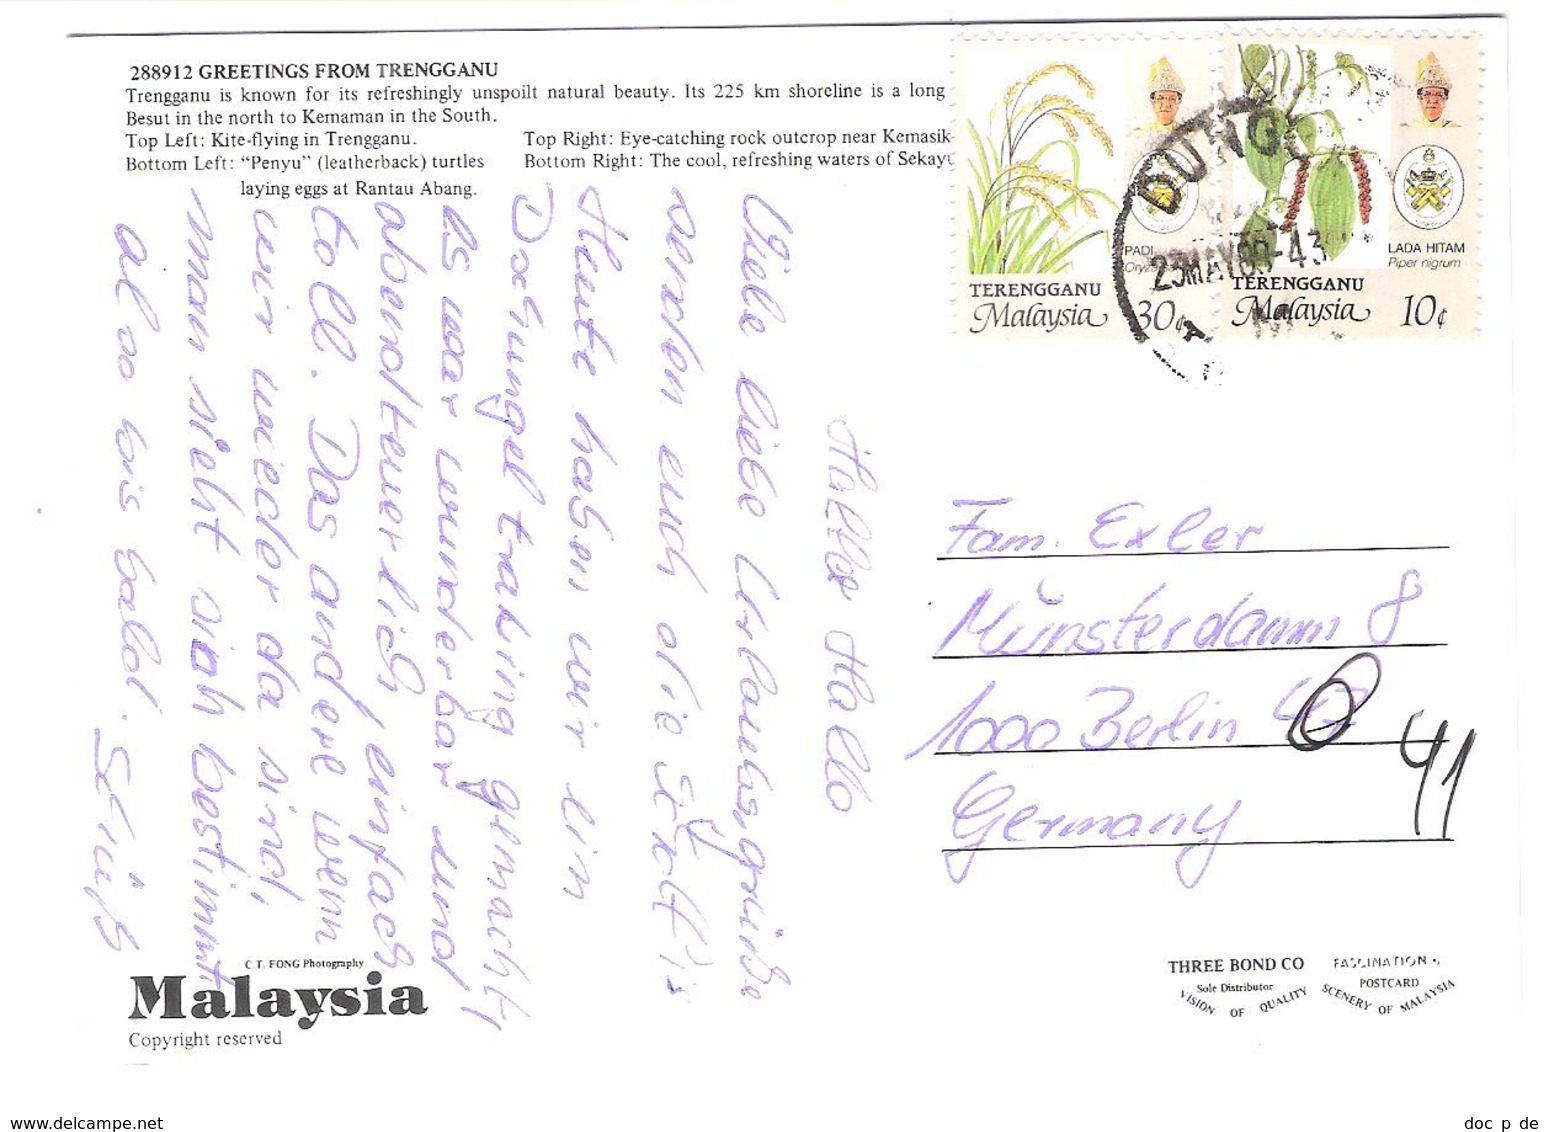 Malaysia - Trengganu - Views - Nice Stamp - Timbre - Malaysia